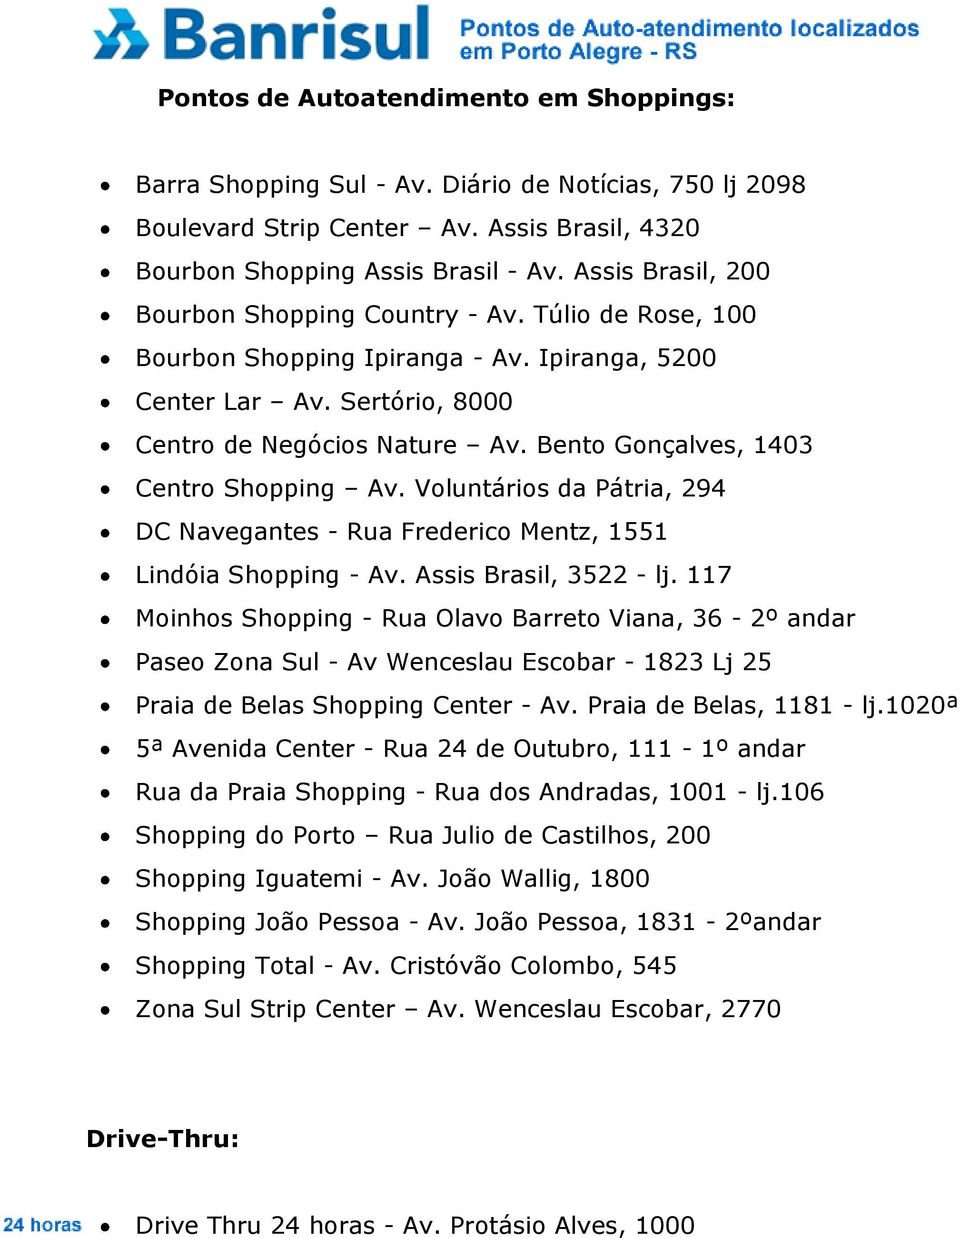 Bento Gonçalves, 1403 Centro Shopping Av. Voluntários da Pátria, 294 DC Navegantes - Rua Frederico Mentz, 1551 Lindóia Shopping - Av. Assis Brasil, 3522 - lj.